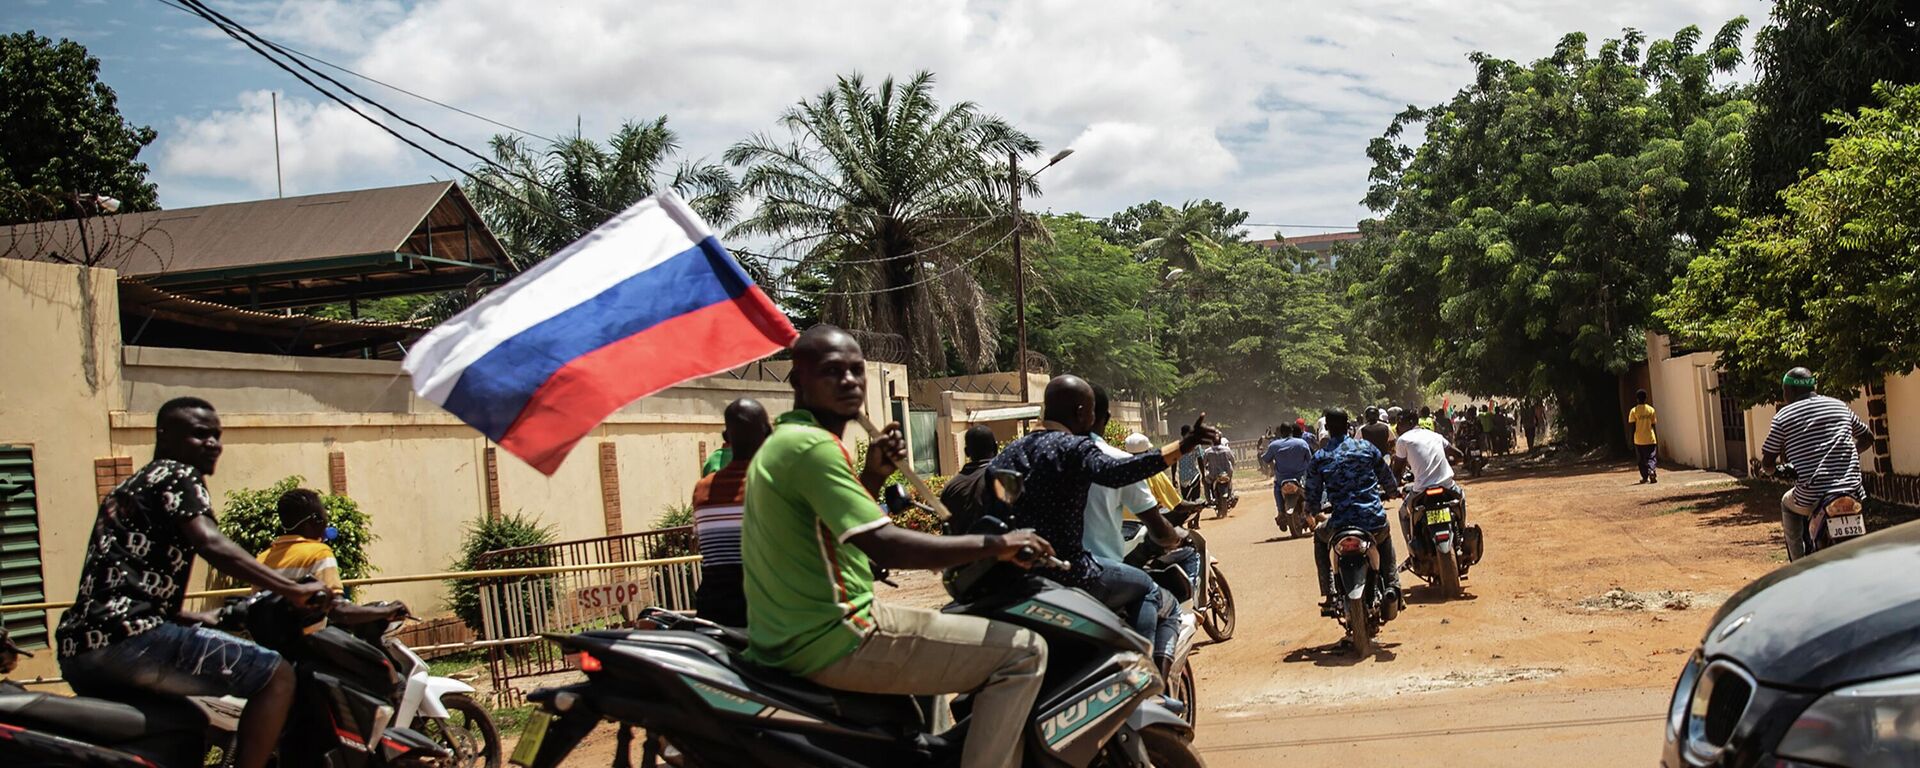 Partidarios del capitán Ibrahim Traore desfilan agitando una bandera rusa en las calles de Uagadugú, Burkina Faso, el domingo 2 de octubre de 2022.  - Sputnik Mundo, 1920, 22.03.2023